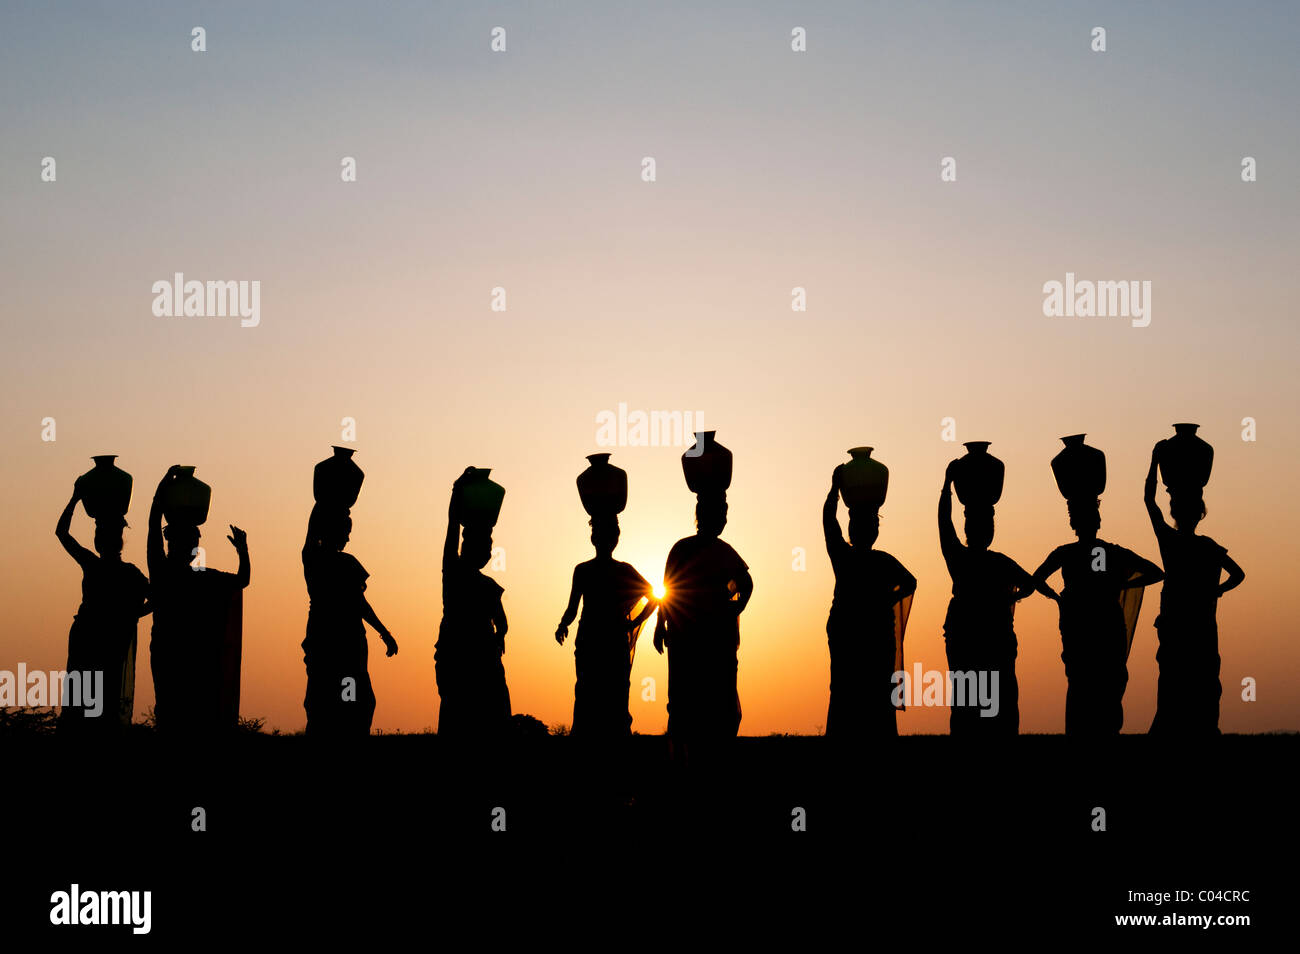 Groupe de femmes indiennes avec des pots d'eau permanent sur leurs têtes dans la campagne indienne. Silhouette Banque D'Images